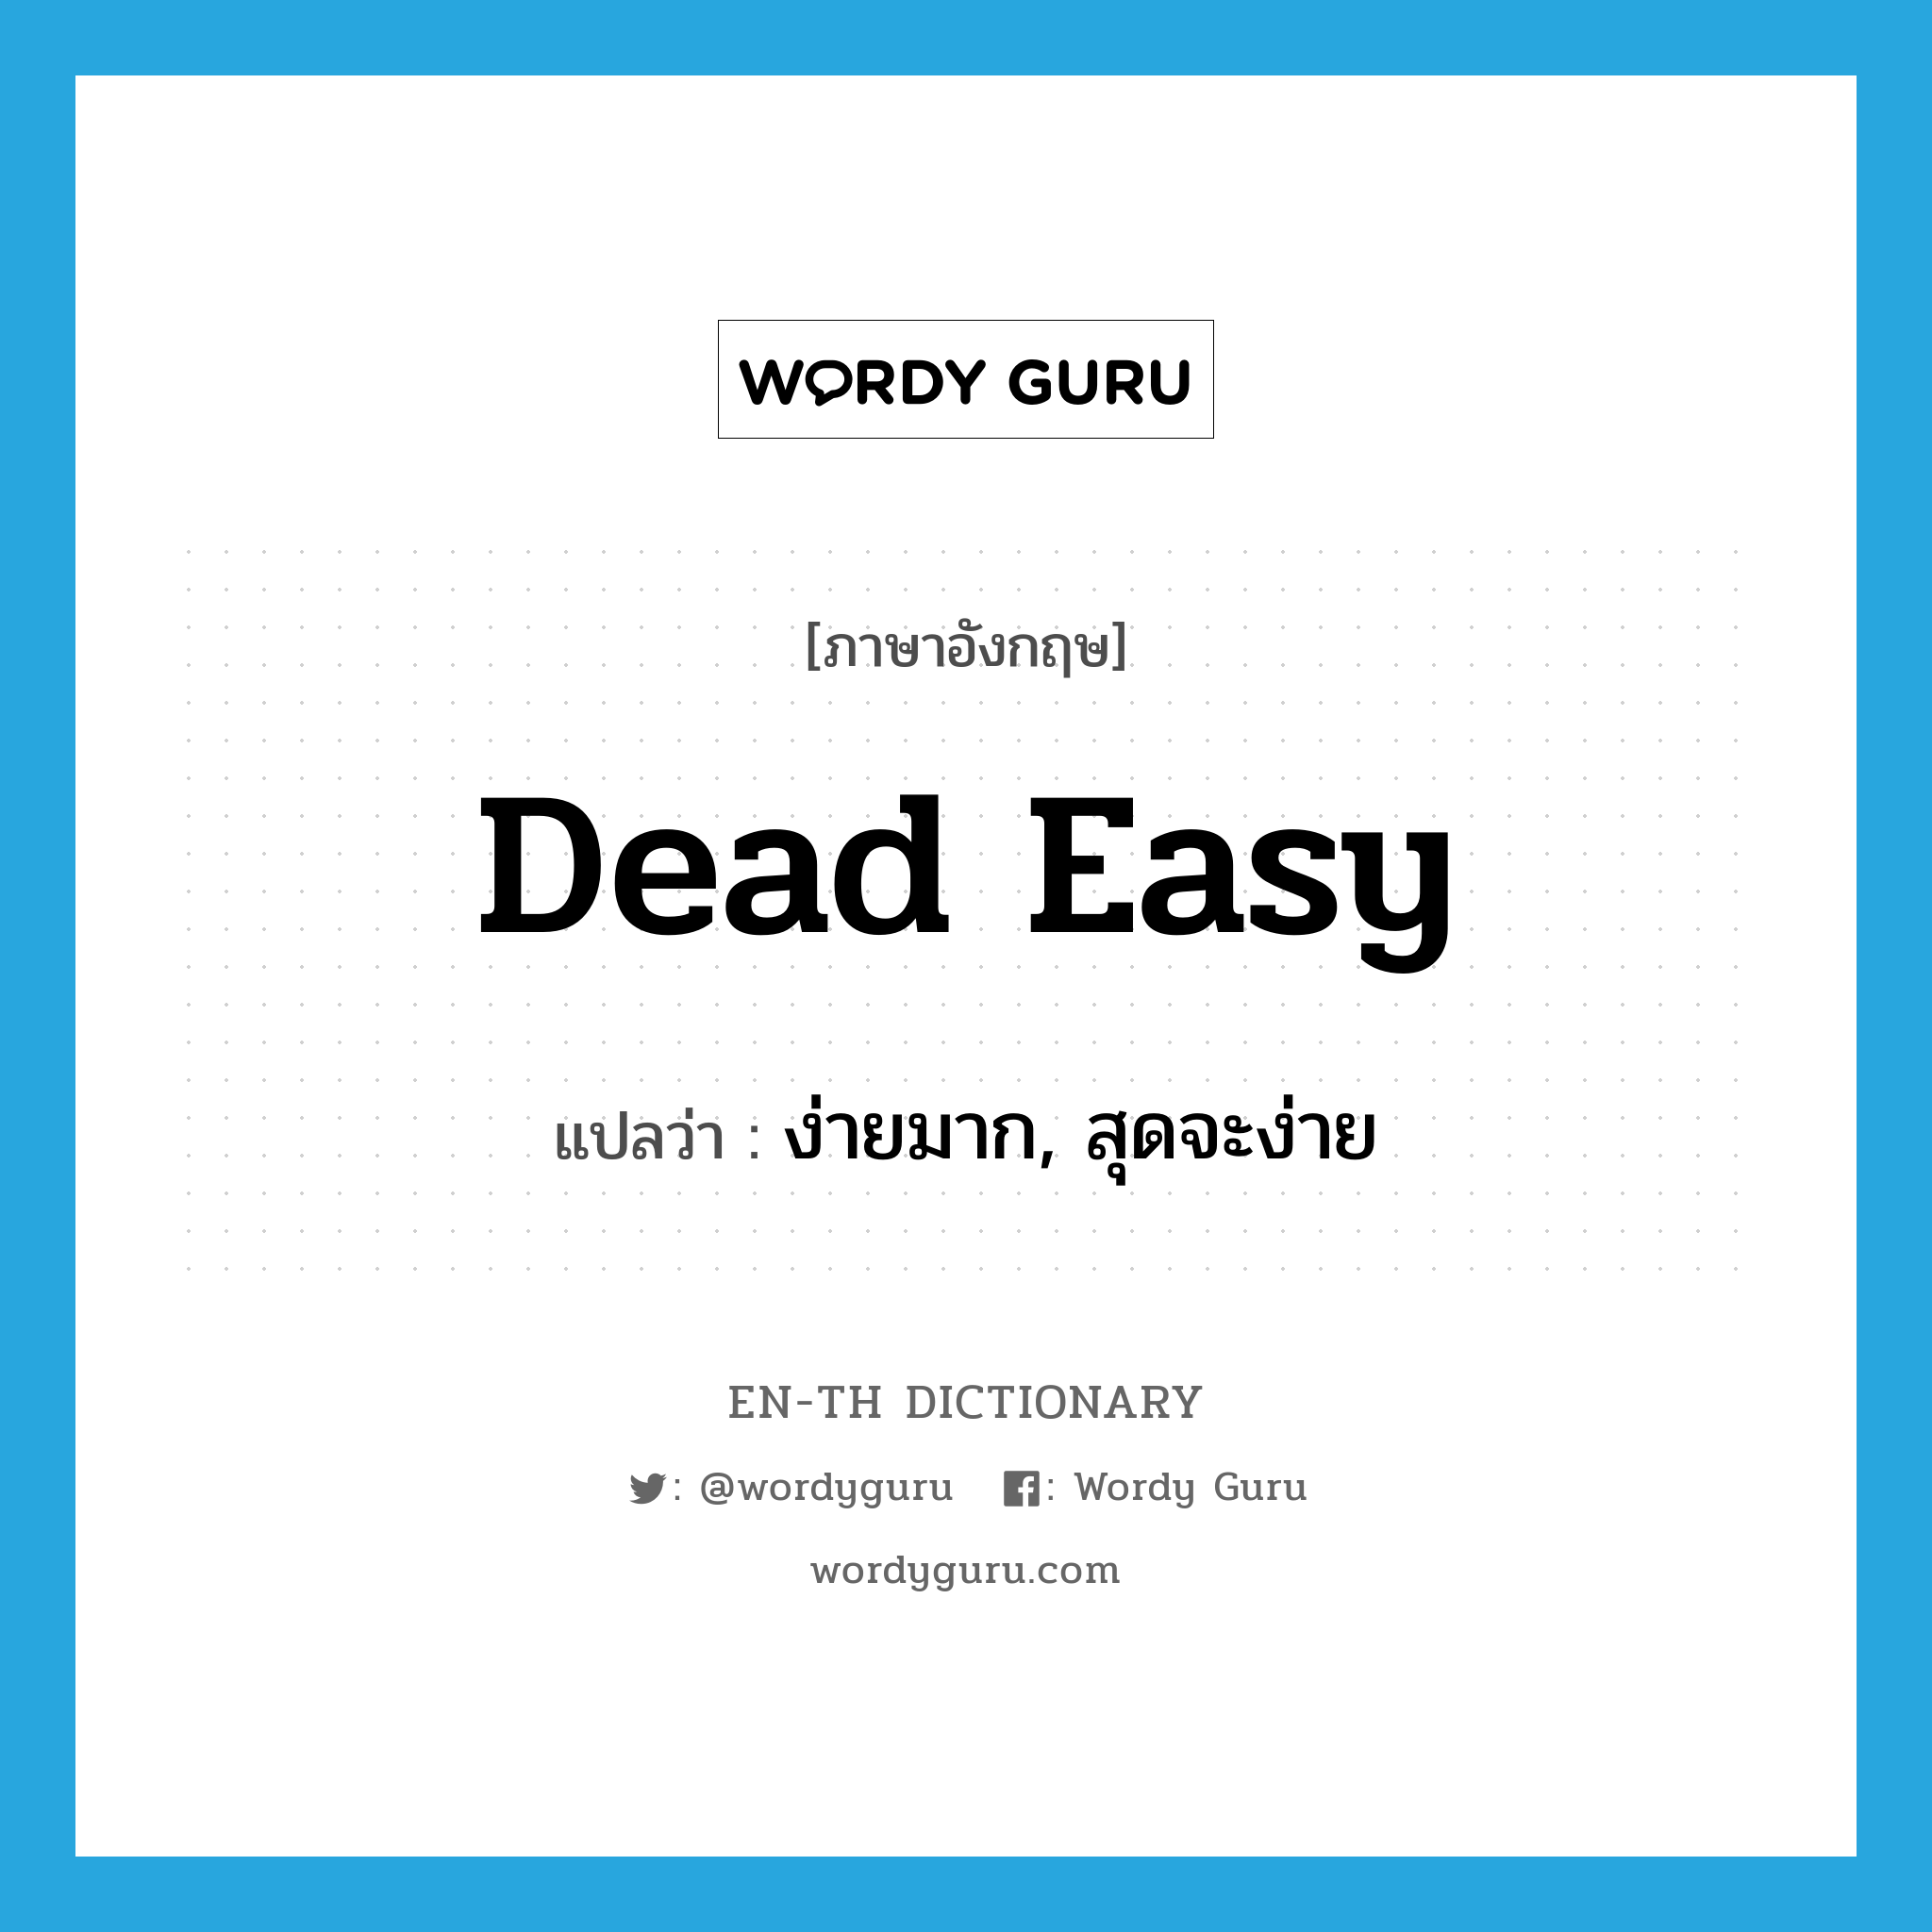 ง่ายมาก, สุดจะง่าย ภาษาอังกฤษ?, คำศัพท์ภาษาอังกฤษ ง่ายมาก, สุดจะง่าย แปลว่า dead easy ประเภท SL หมวด SL